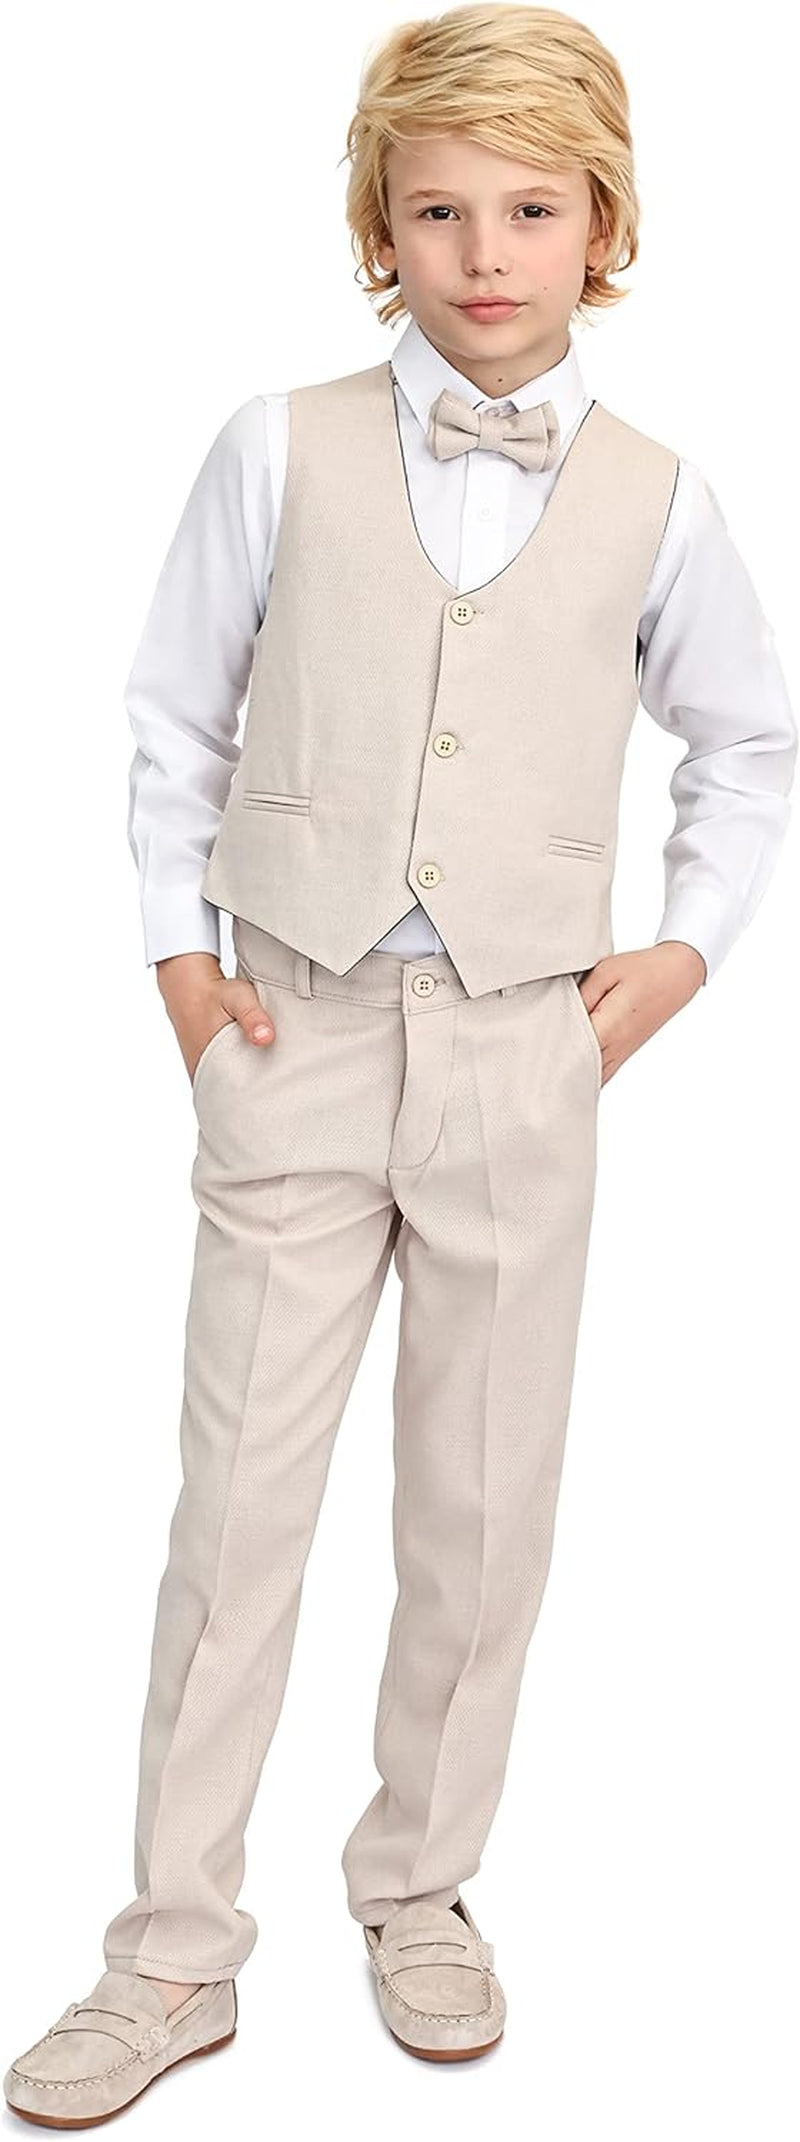 Boys Formal Suit 4 Piece Vest, Pants and Tie Dresswear Suit Set